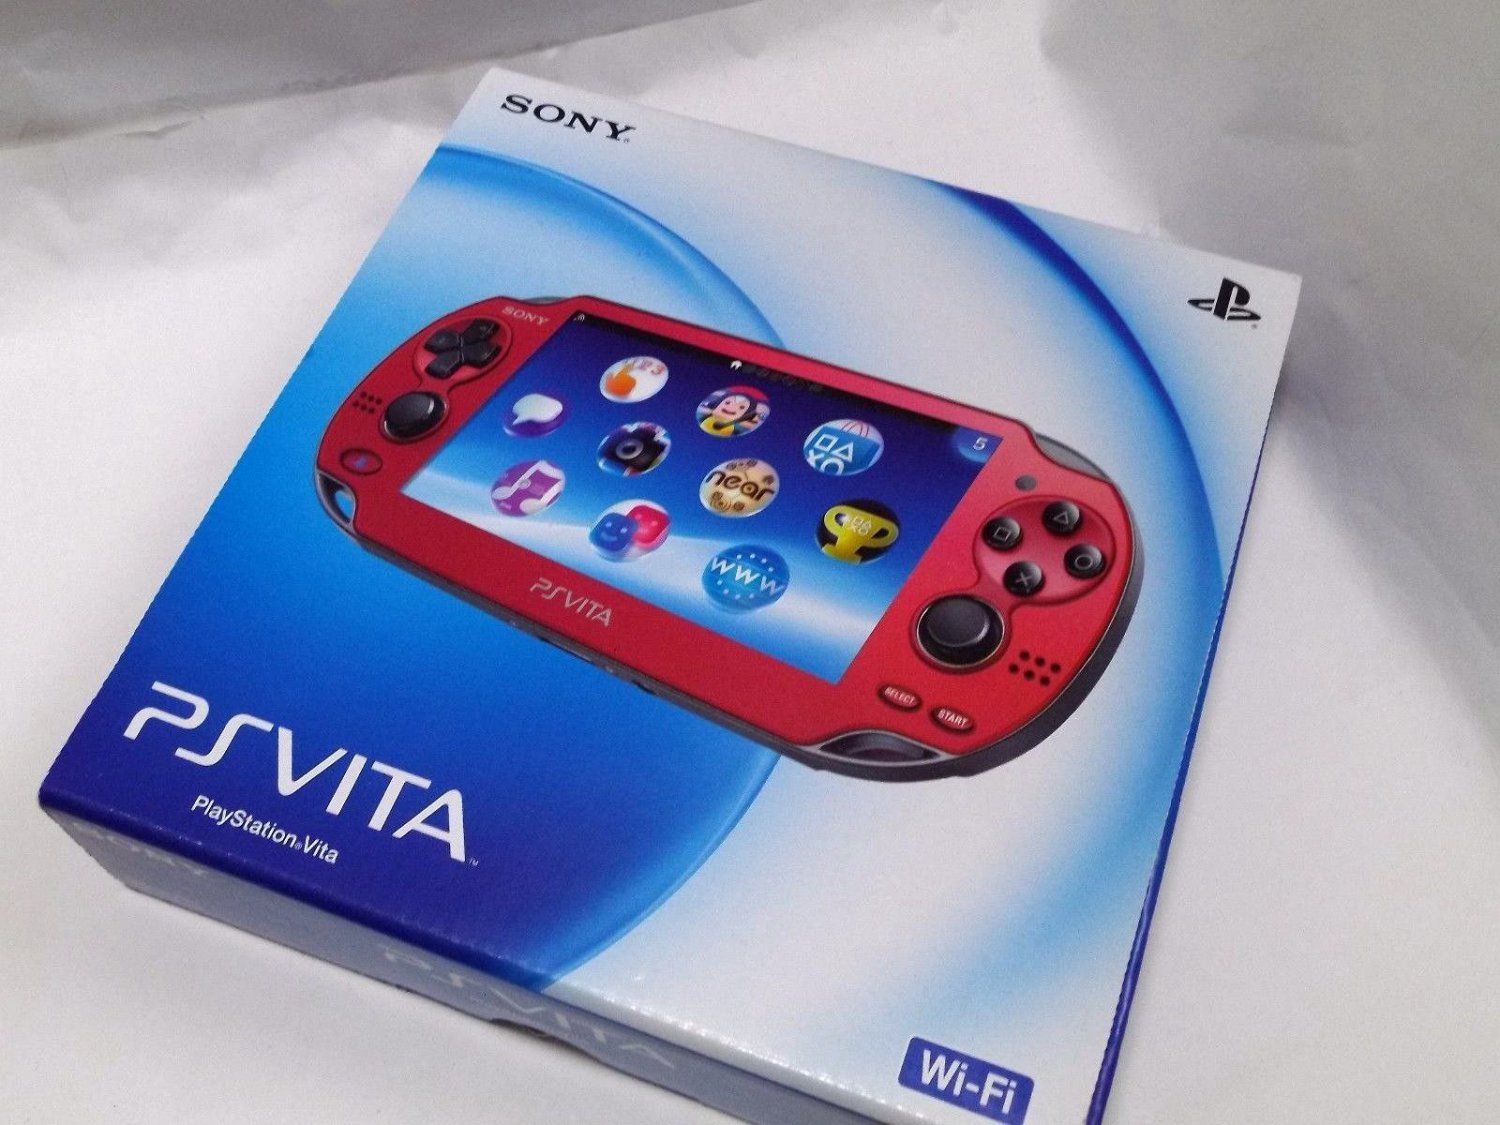 SONY PS Vita PCH-1000 ZA03 RED Wi-fi Model Console